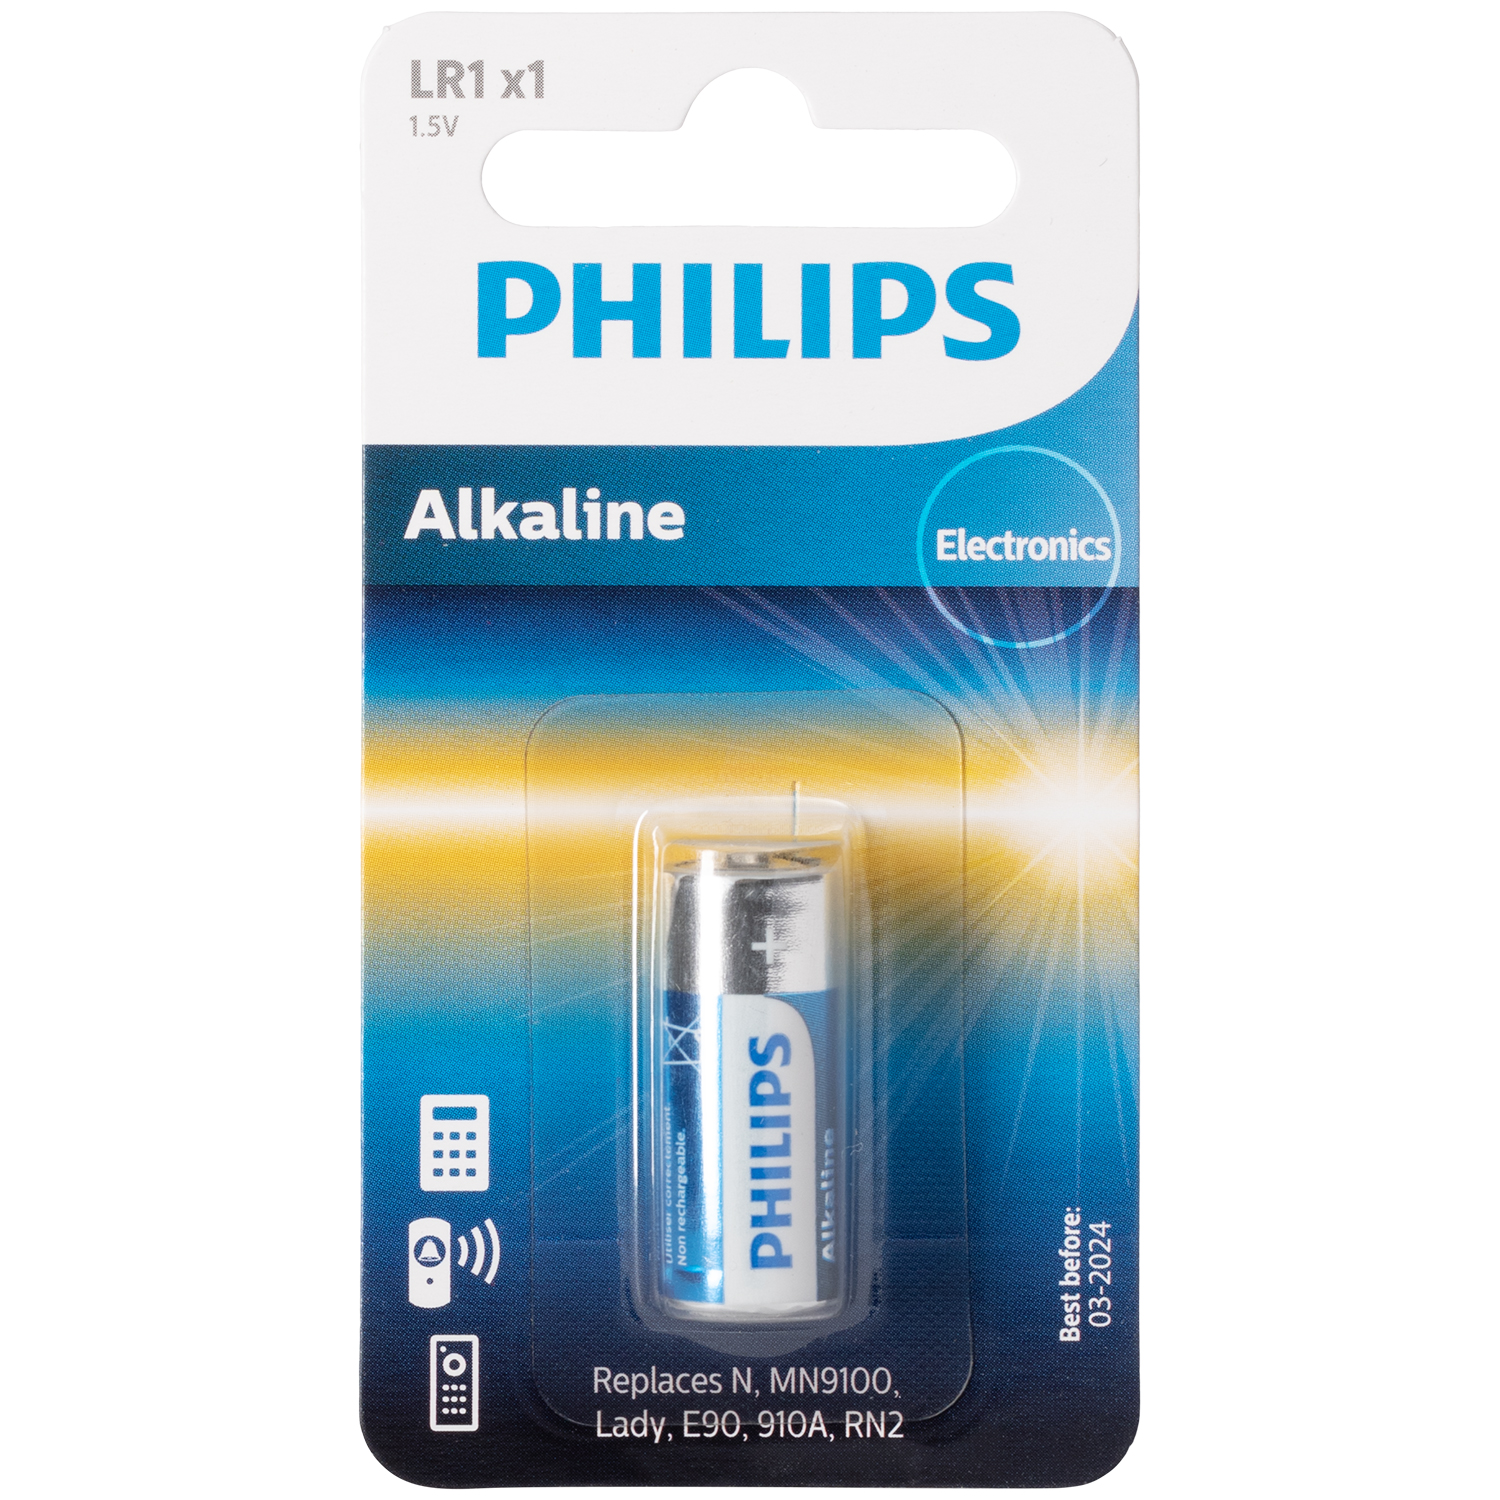 Philips Alkaline LR1 1.5V Batteri - Batterier